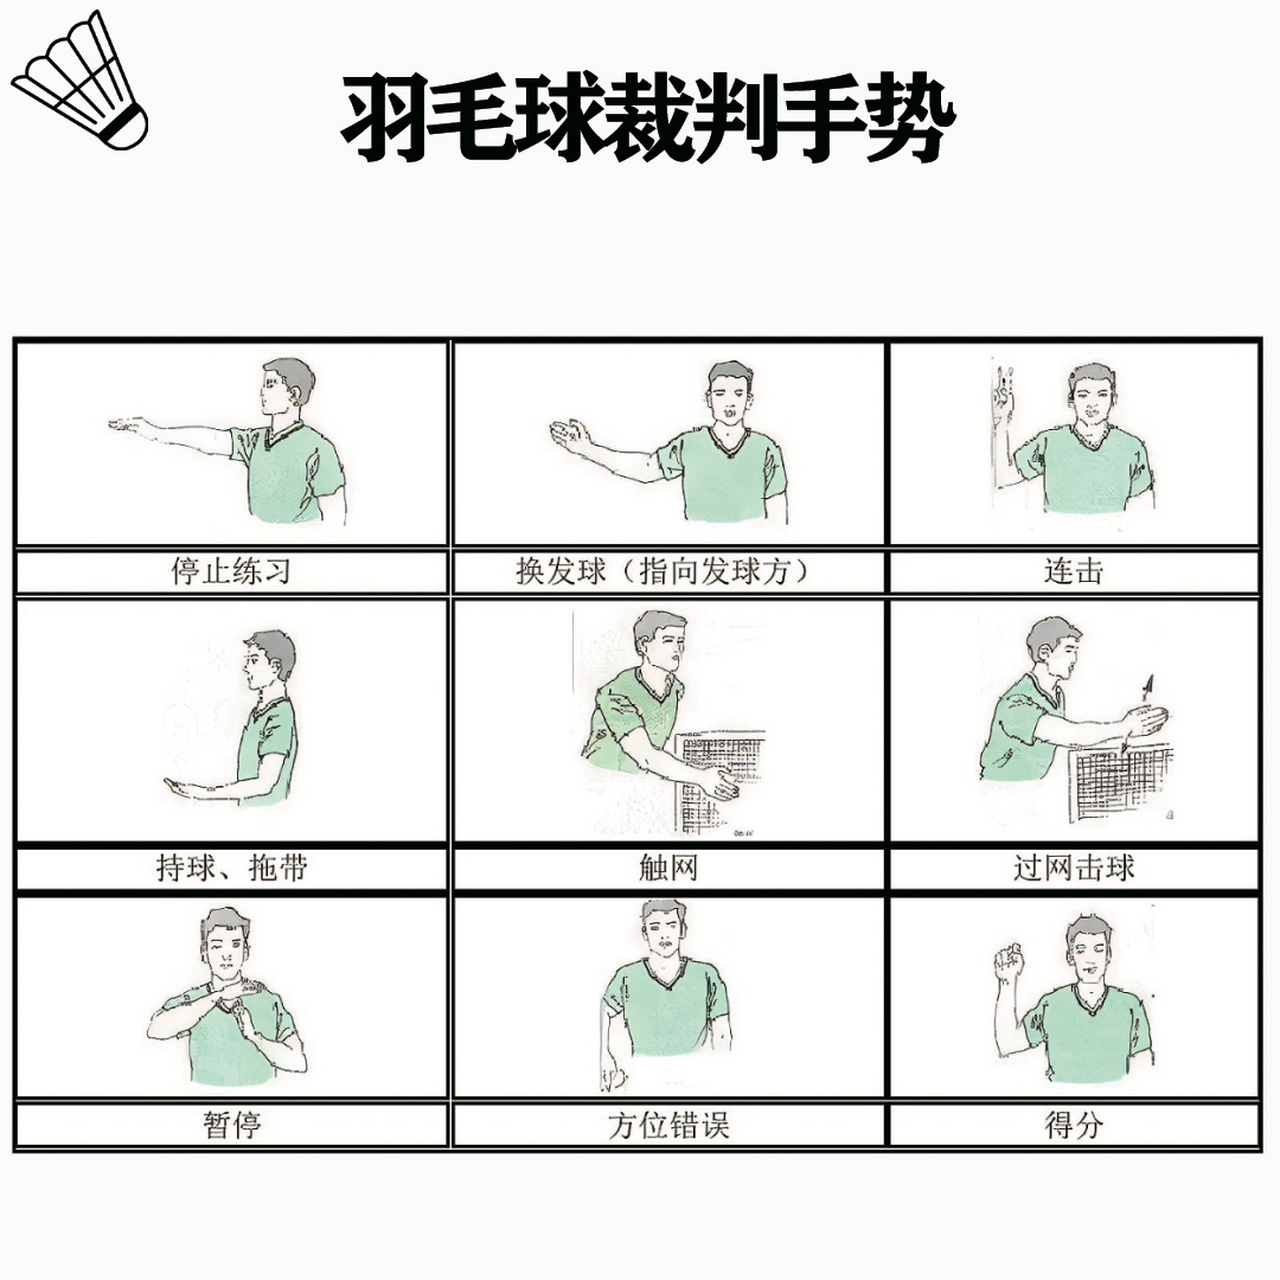 羽毛球裁判规则及手势图片